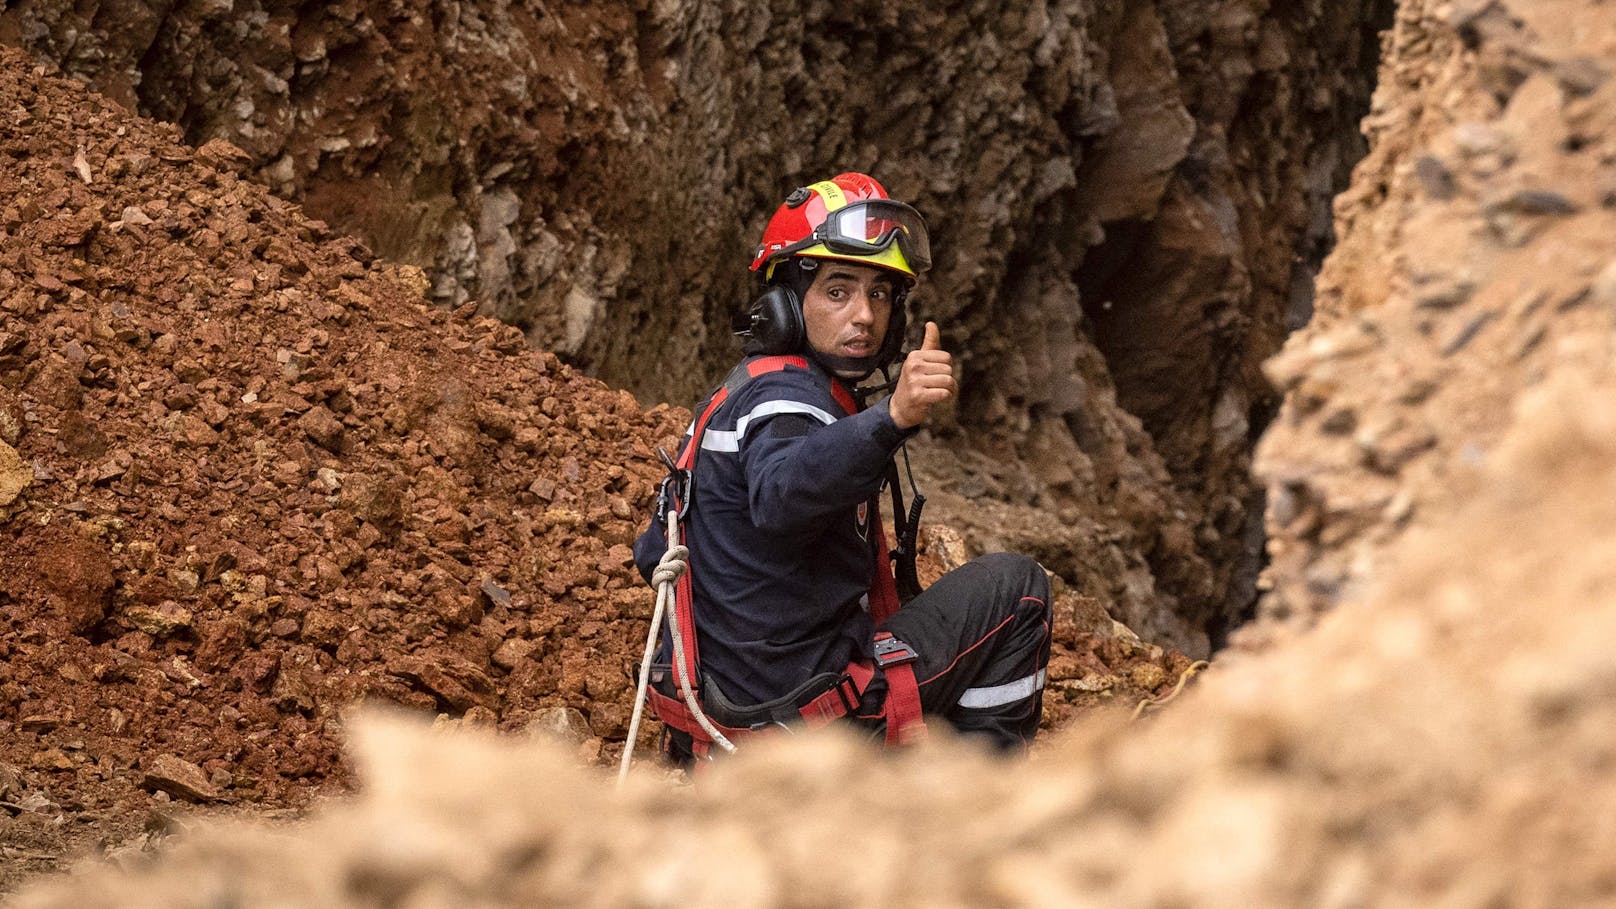 Rettung geglückt! Hilfskräfte haben den 5-Jährigen, der am Dienstag in einen 32 Meter tiefen Schacht gestürzt war, erreicht.